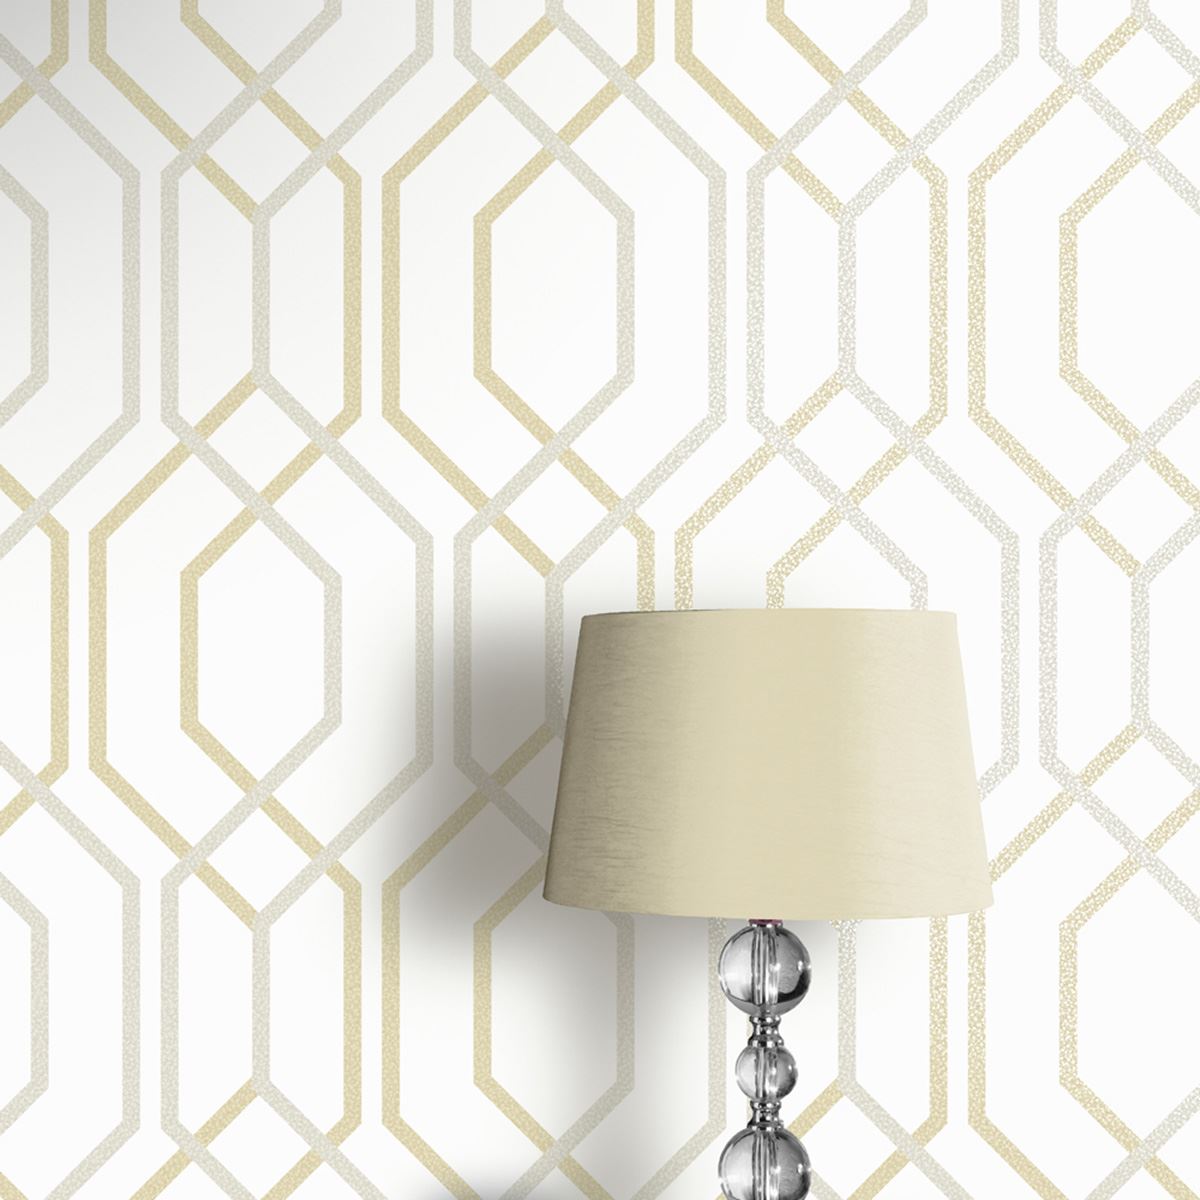 White geometric wallpaper